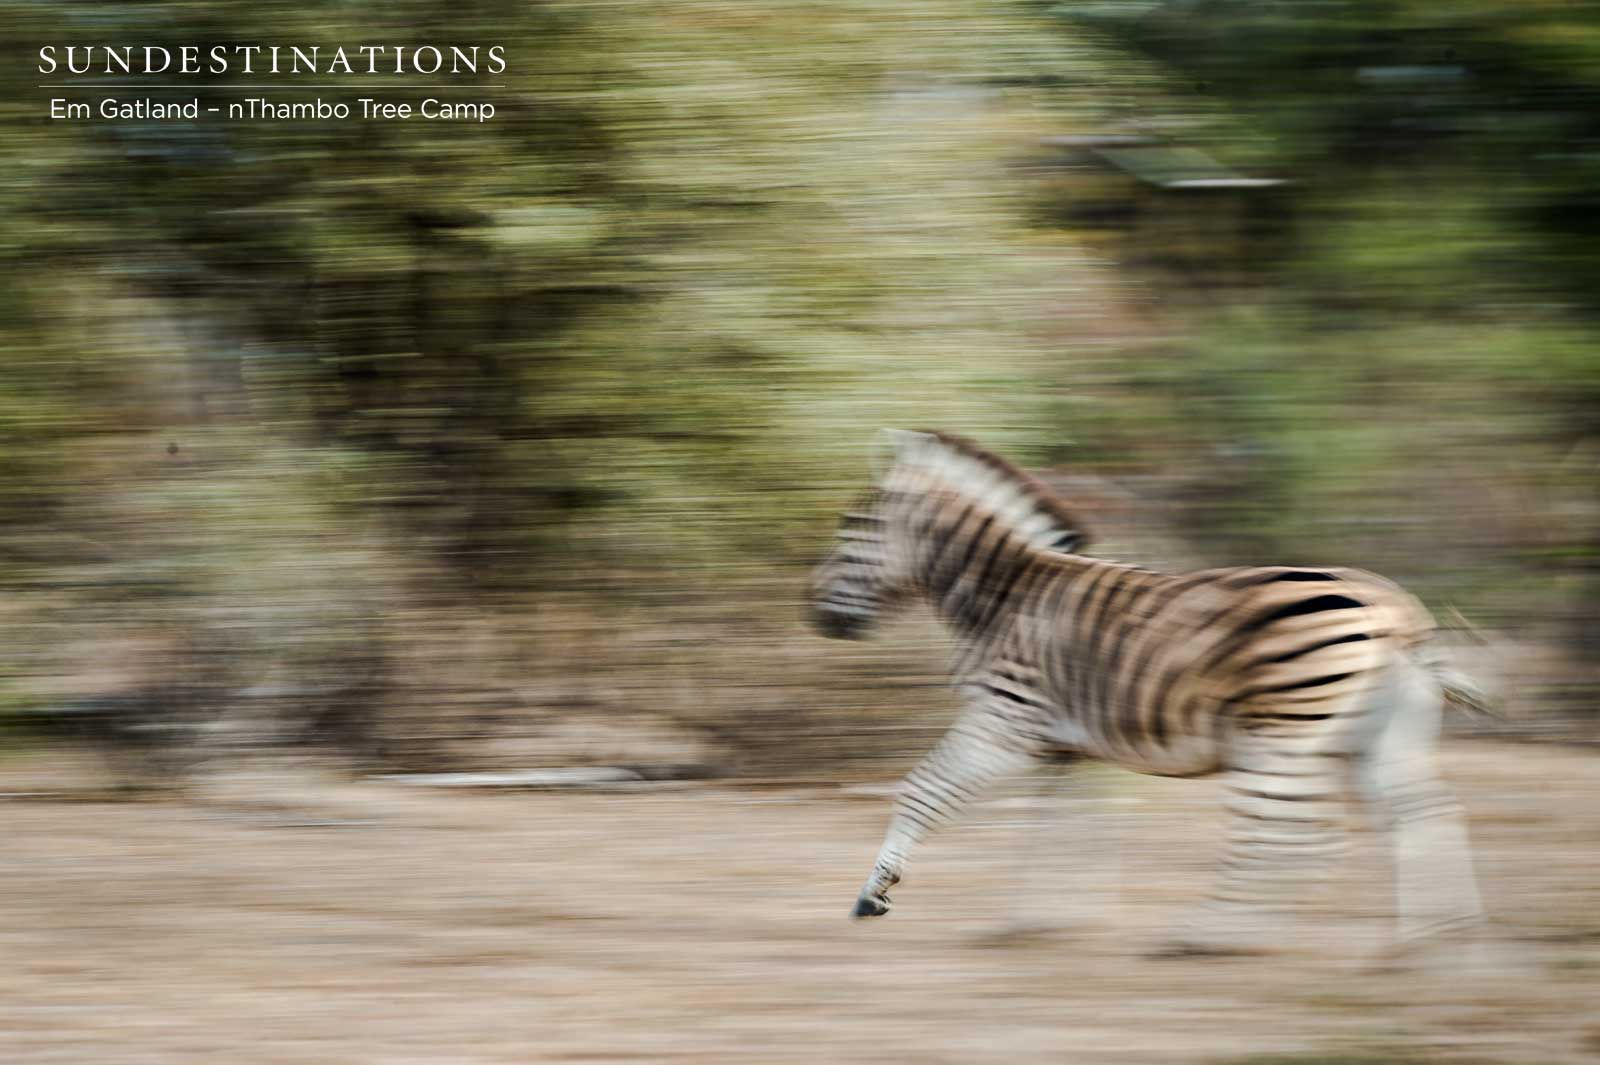 Zebra Herd in Movement